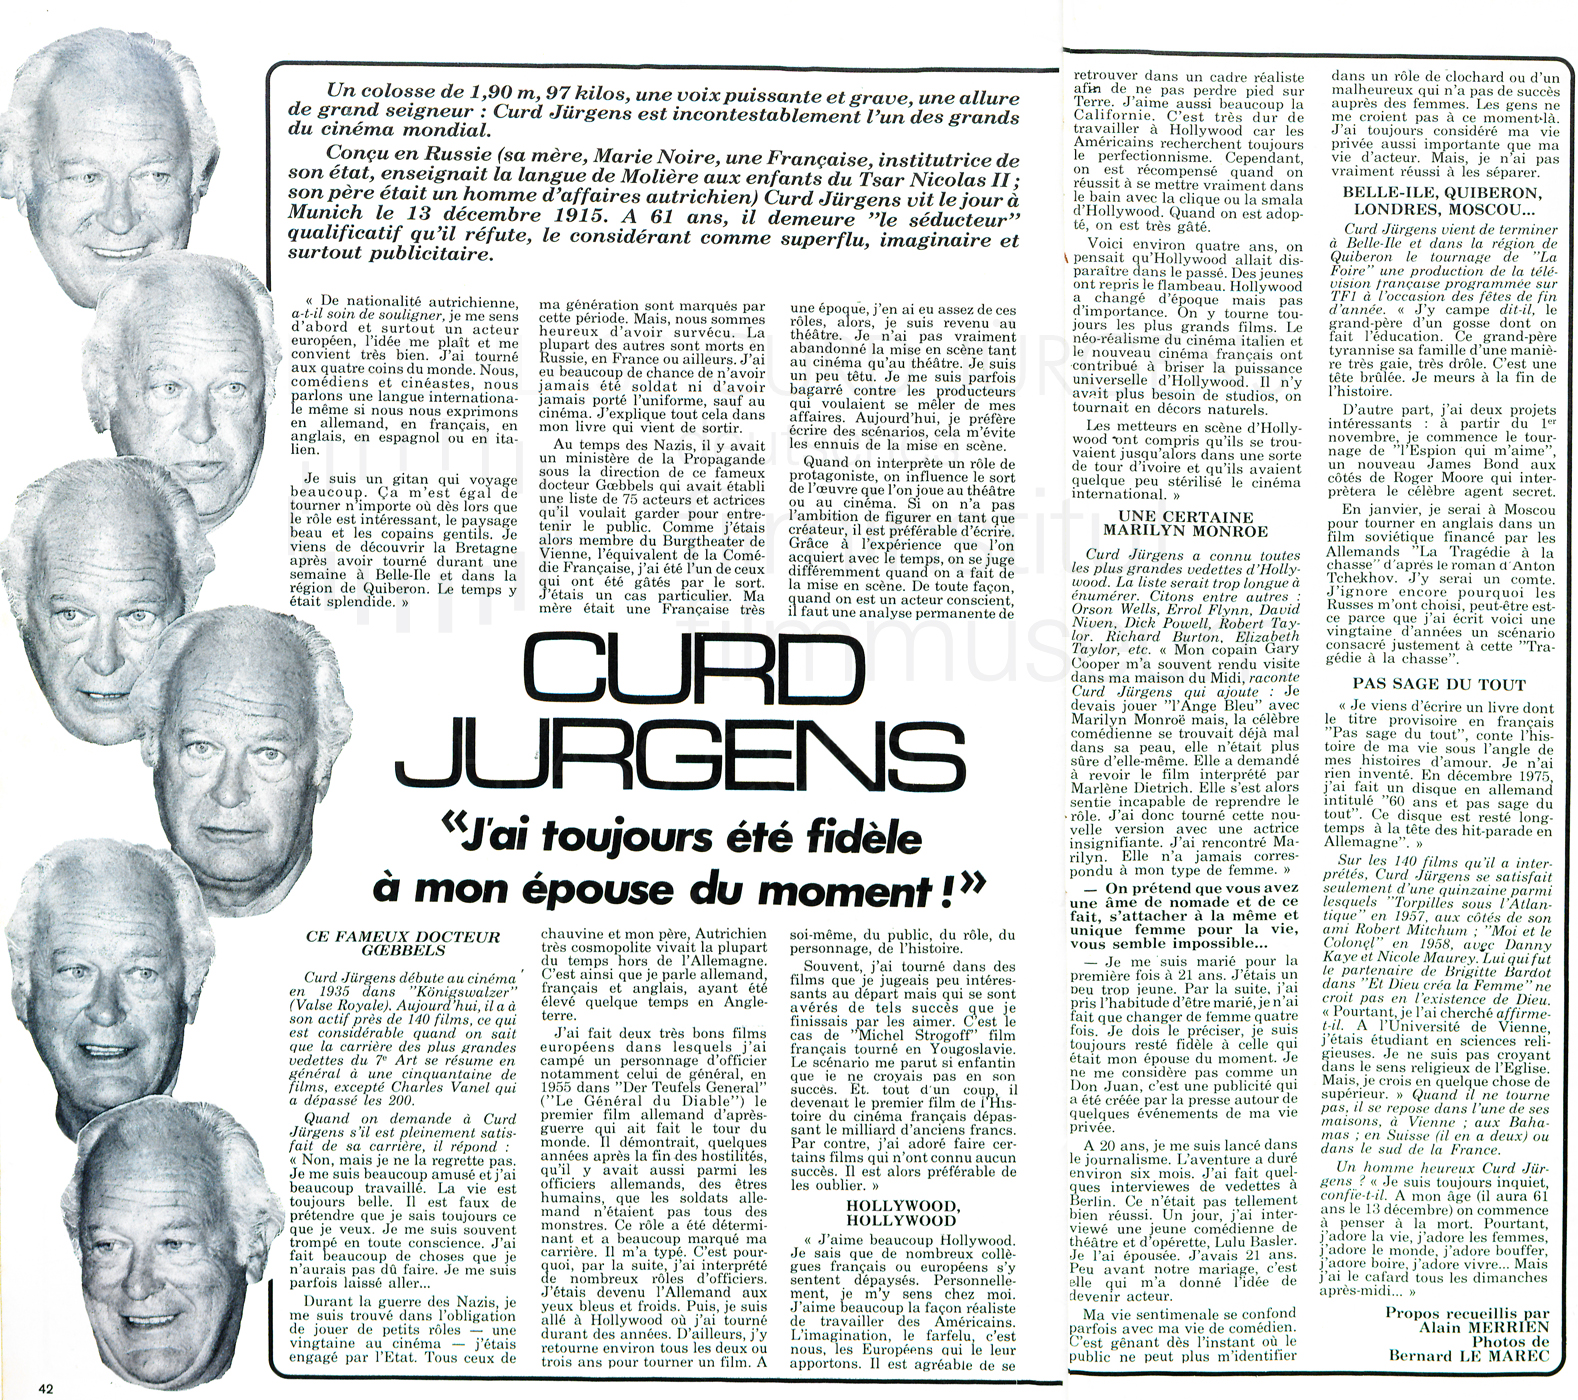 L'Hebdo:„Curd Jurgens: J'ai toujours été fidèle à mon épouse du moment!“, Nr. 3, 1976